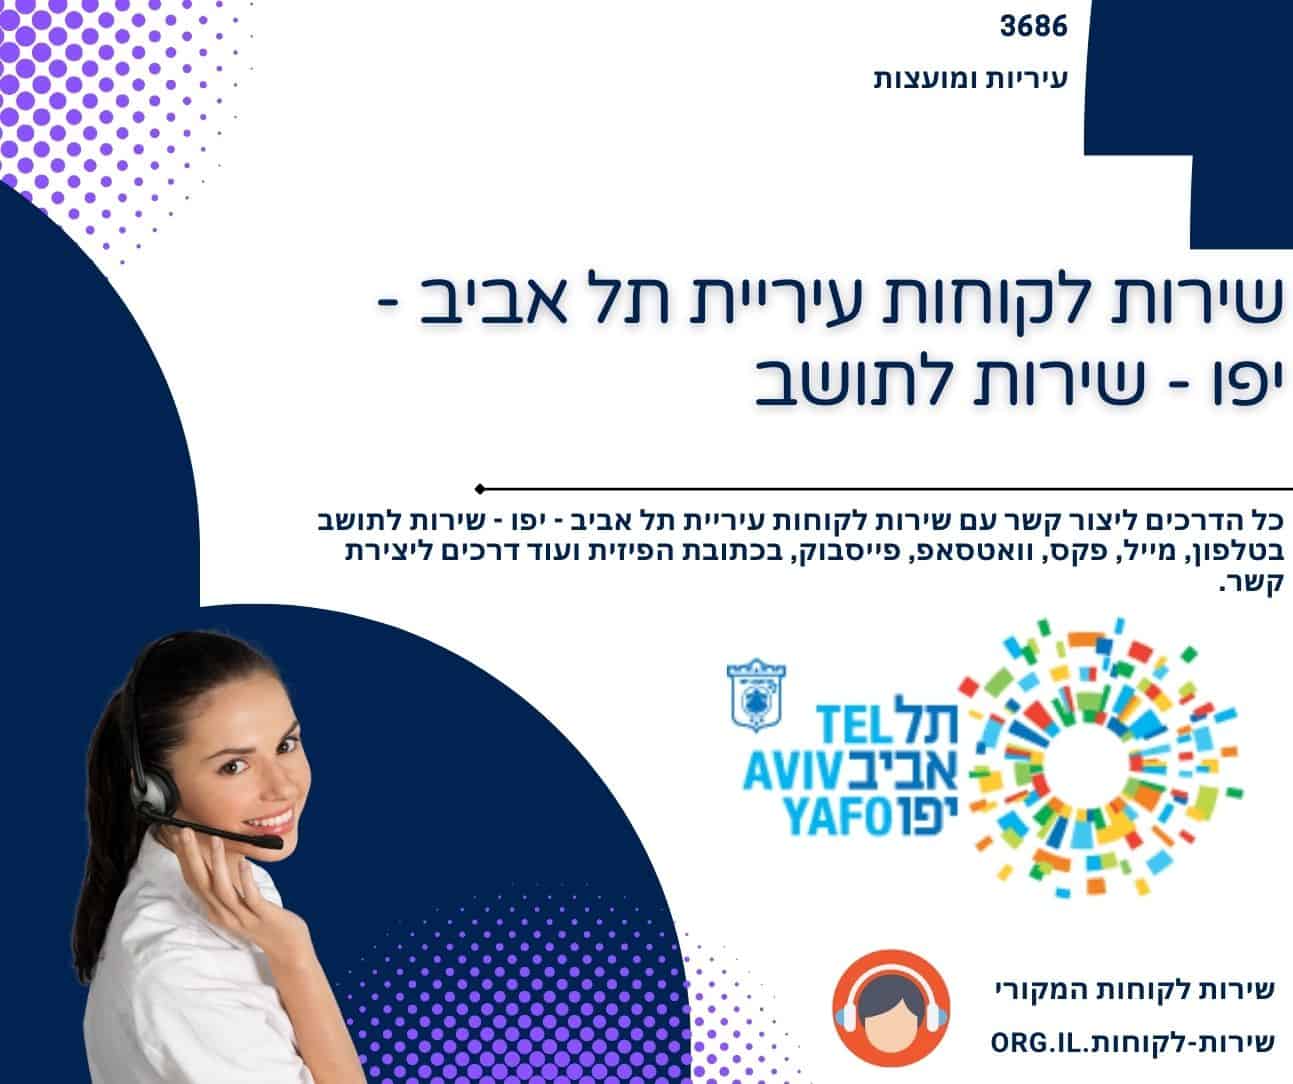 שירות לקוחות עיריית תל אביב - יפו - שירות לתושב